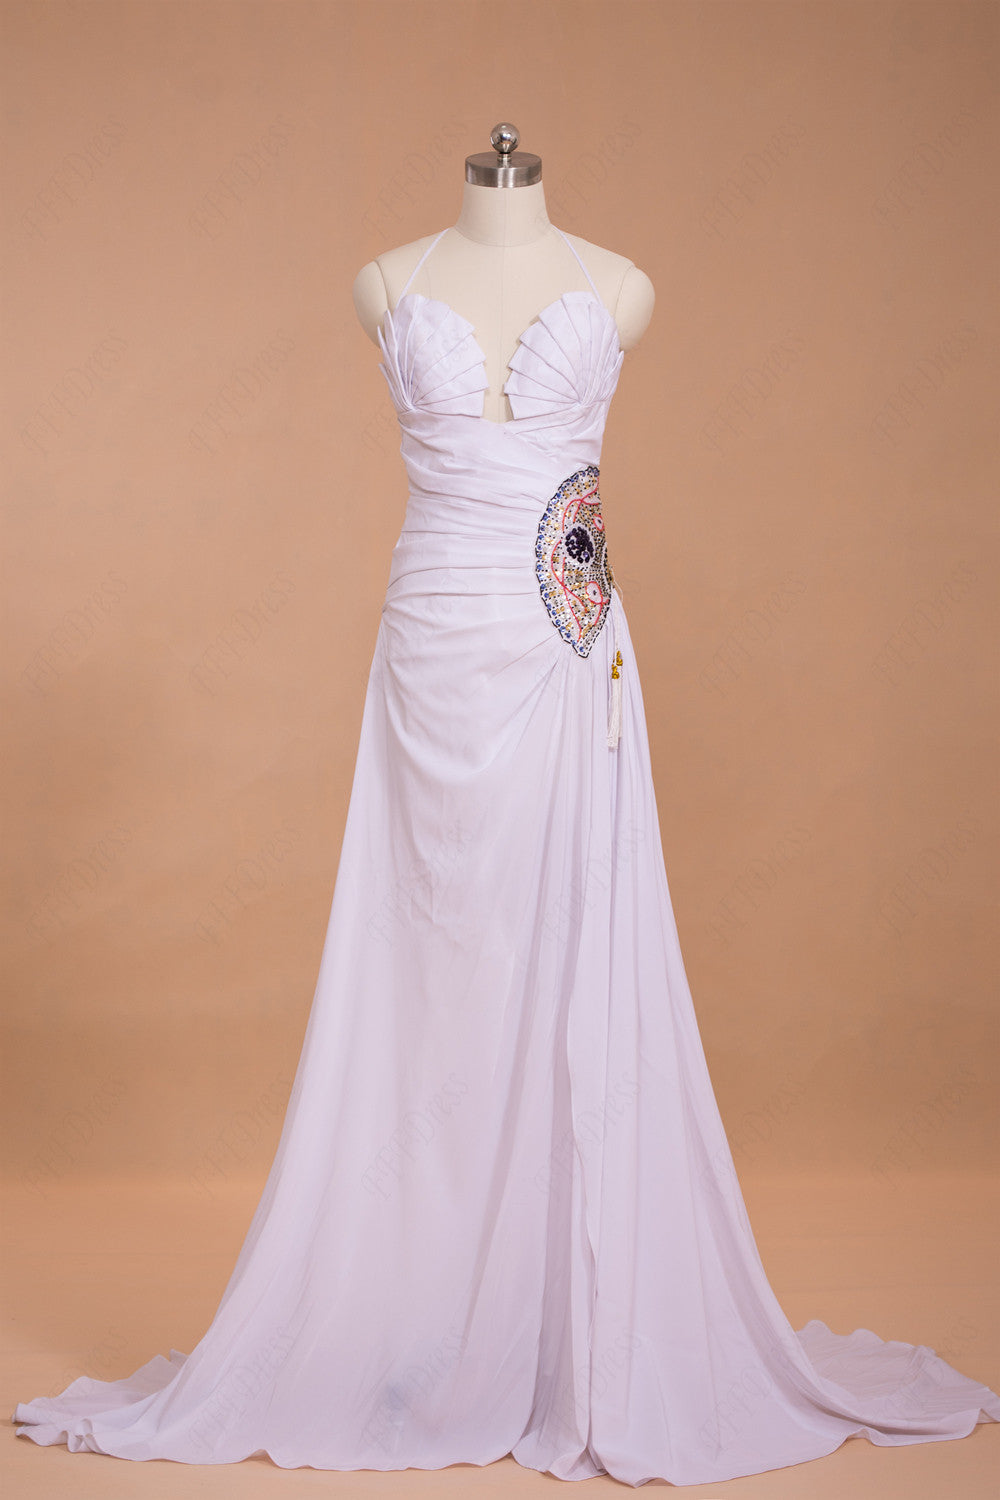 Halter Beaded White Long Prom Dresses with Slit